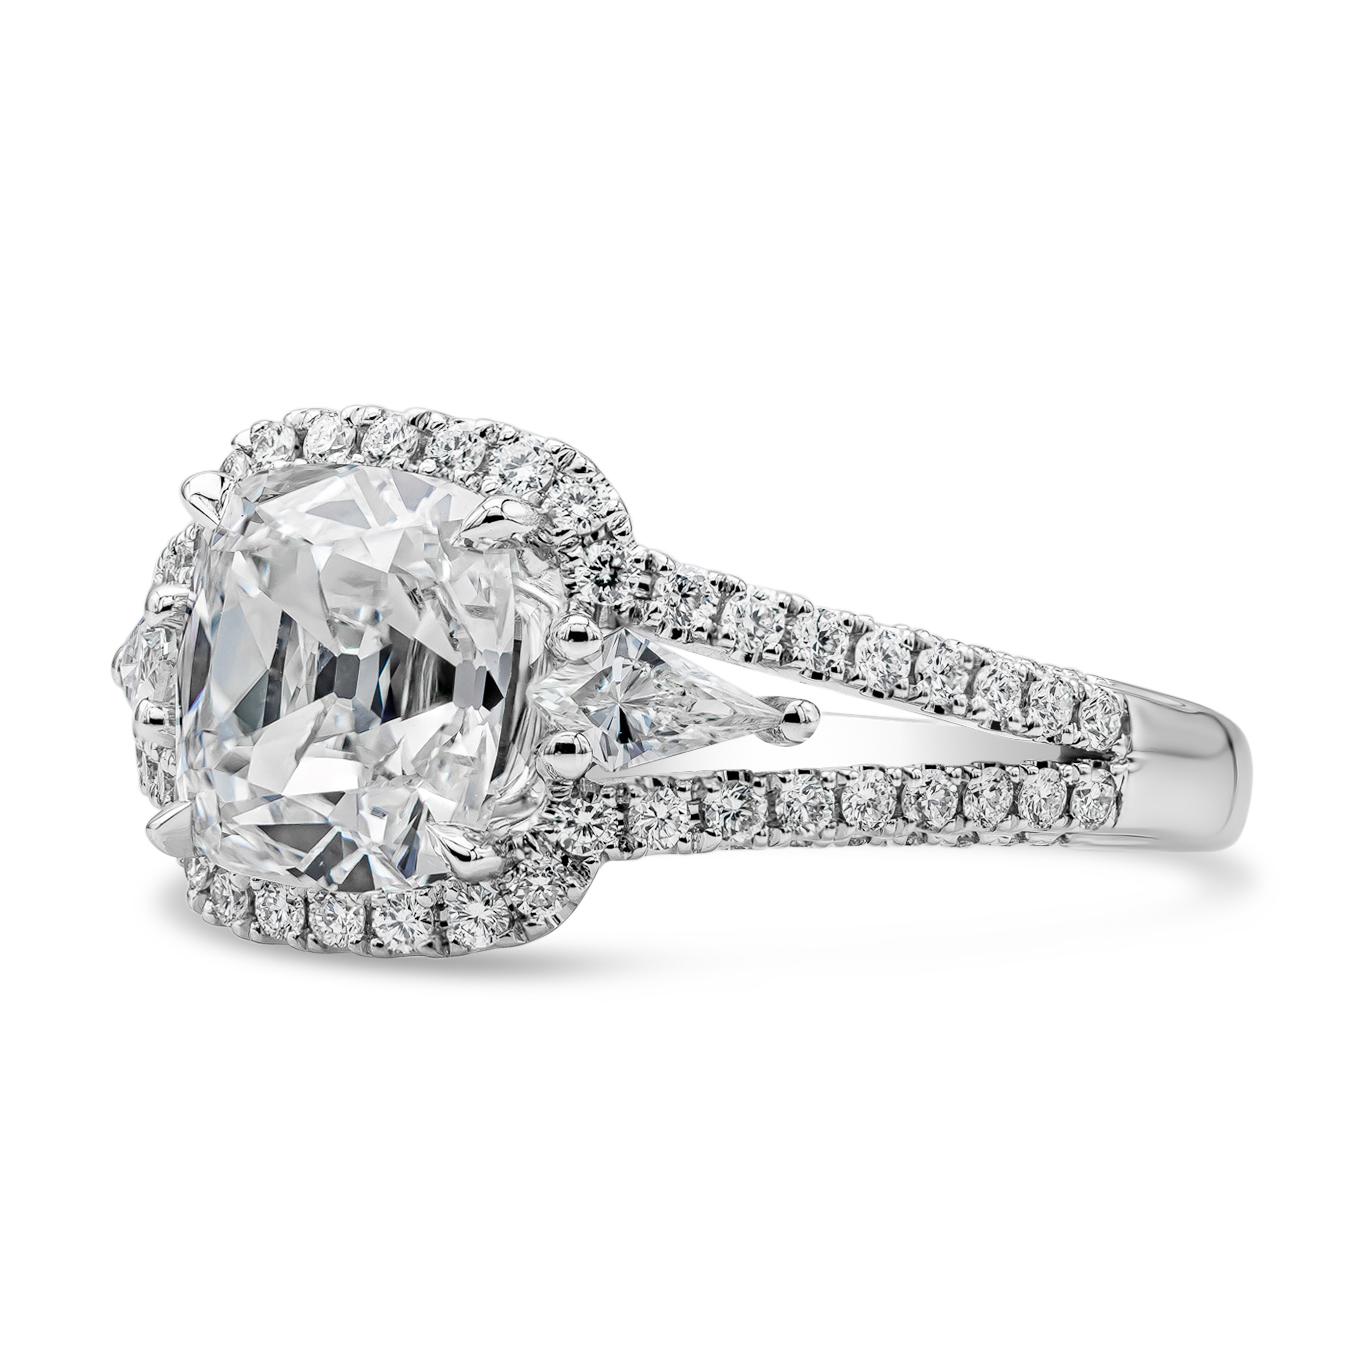 Dieser elegante Drei-Stein-Halo-Verlobungsring präsentiert einen GIA-zertifizierten Diamanten mit 2,22 Karat im Kissenschliff, Farbe G und Reinheit VS1.  Flankiert von Brillanten im Drachenschliff auf jeder Seite, gefasst in einer diamantbesetzten